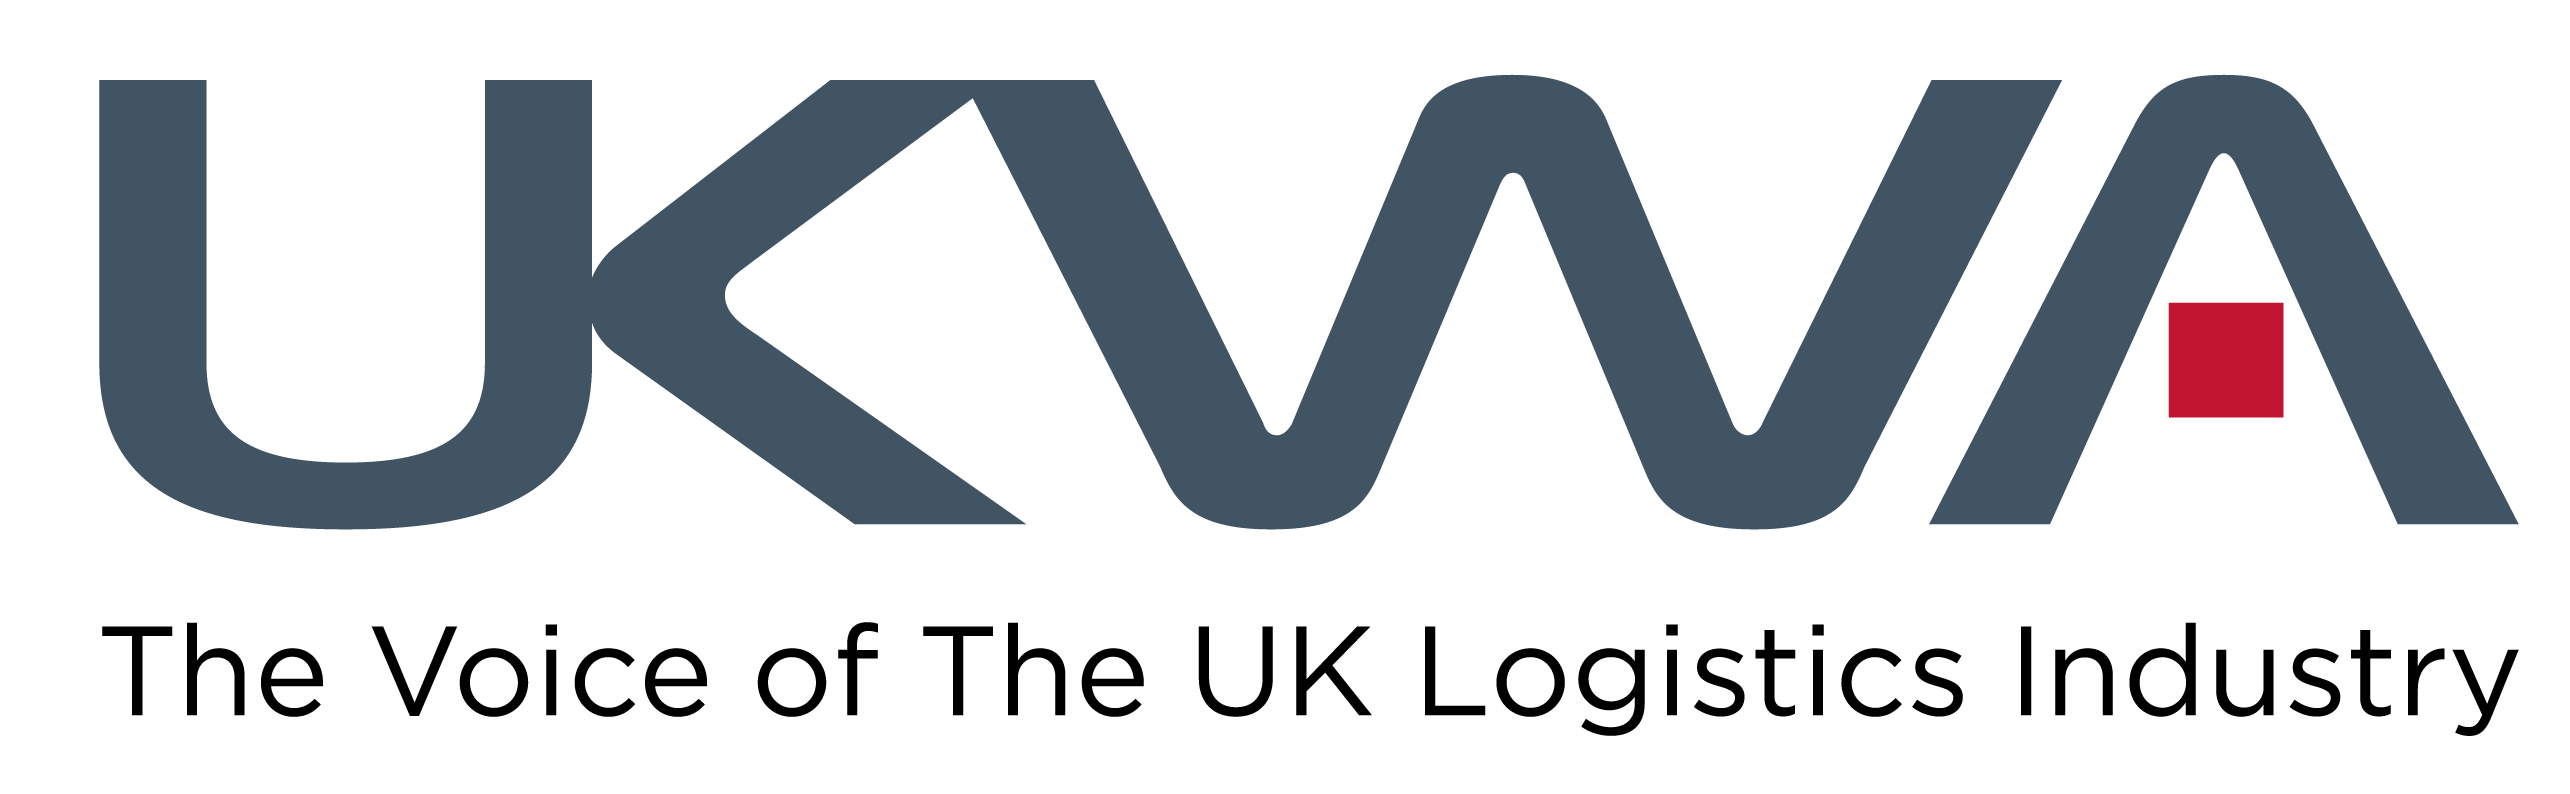 Ukwa logo